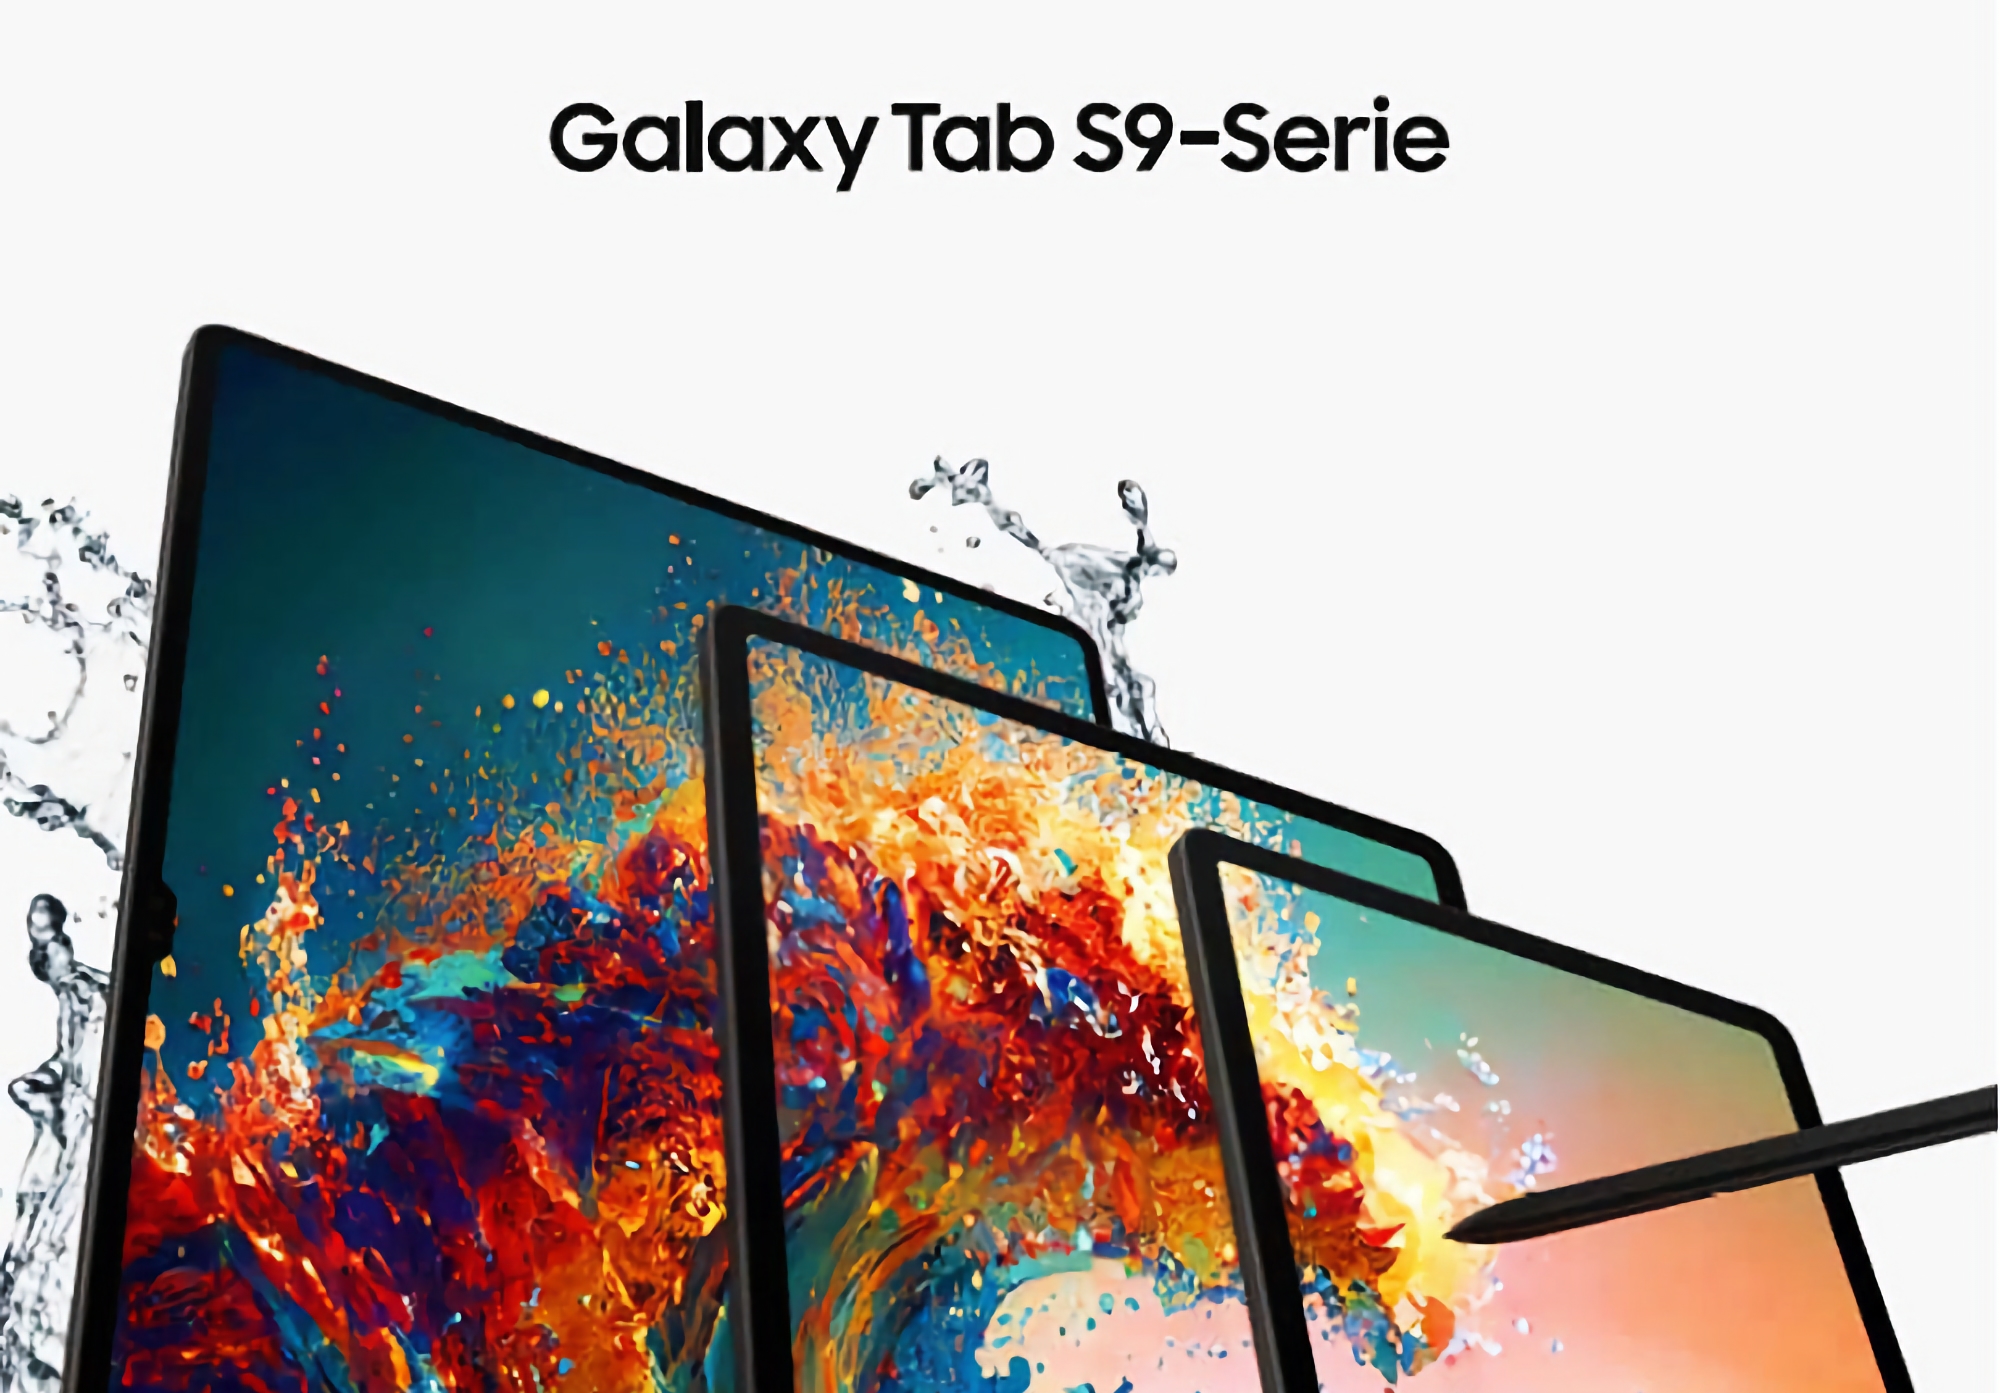 Informator ujawnił, ile tablety Samsung Galaxy Tab S9, Galaxy Tab S9+ i Galaxy Tab S9 Ultra będą kosztować w Kanadzie